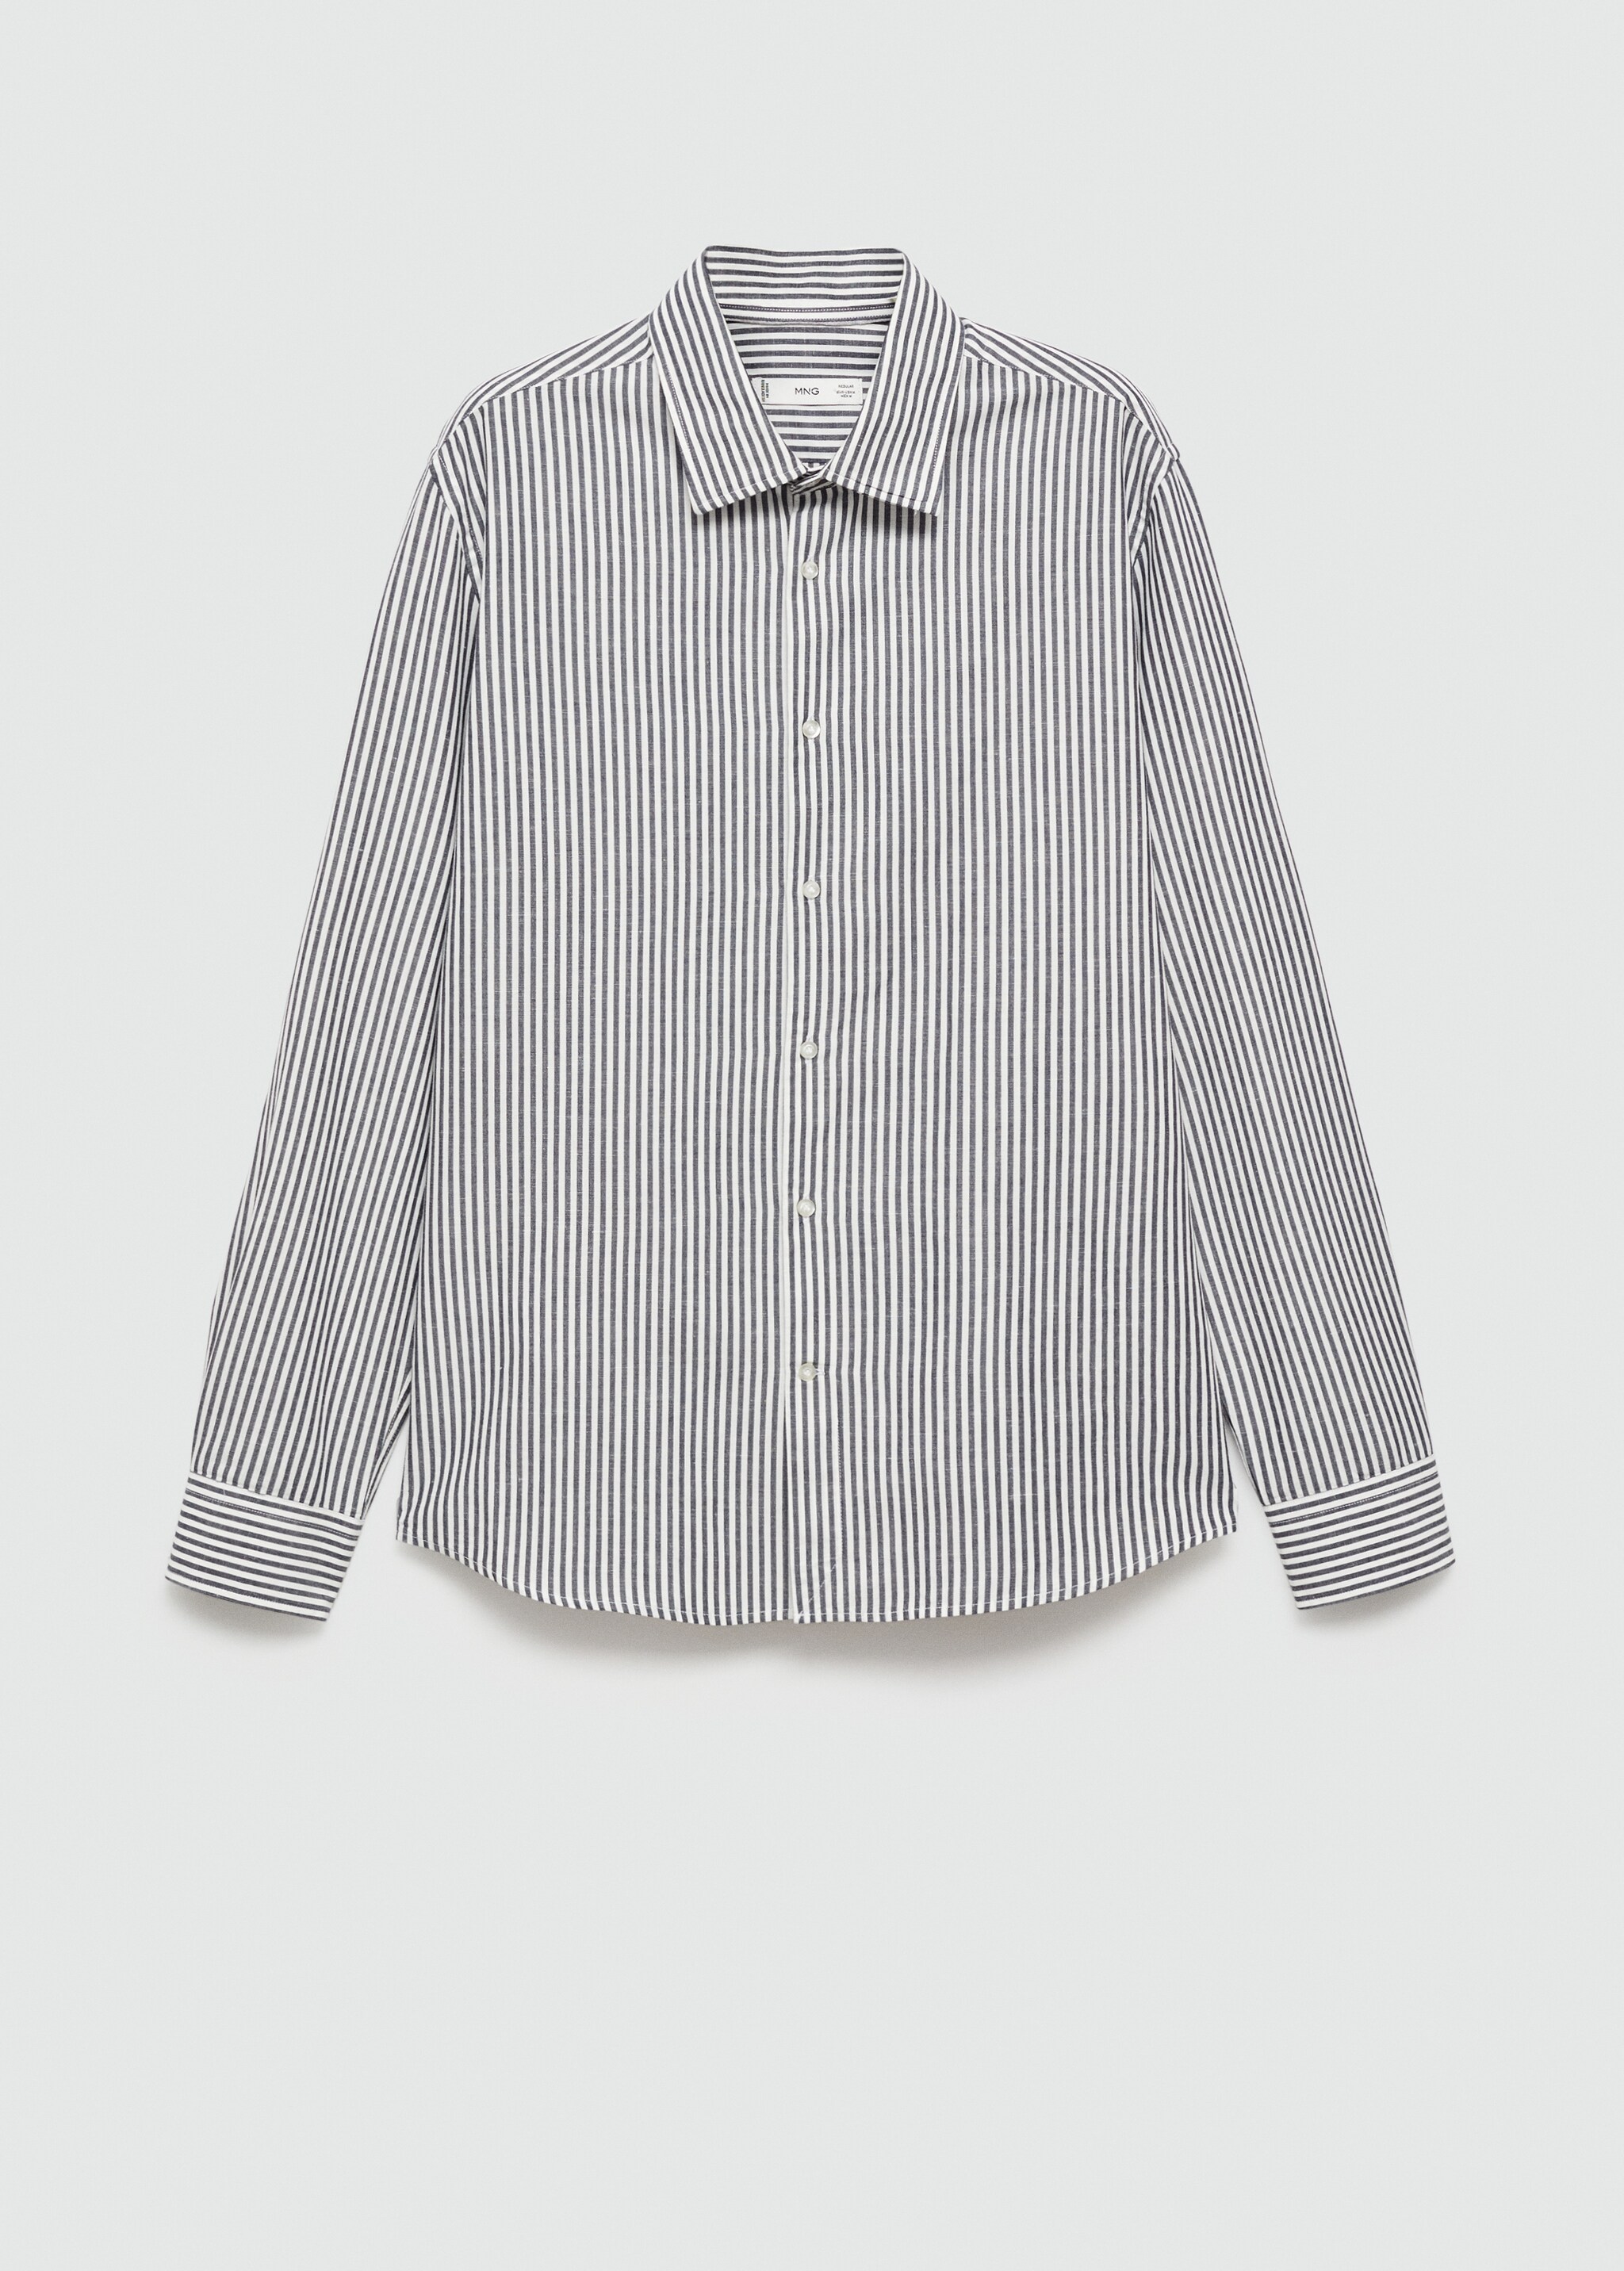 Camisa regular fit lino algodón rayas  - Artículo sin modelo